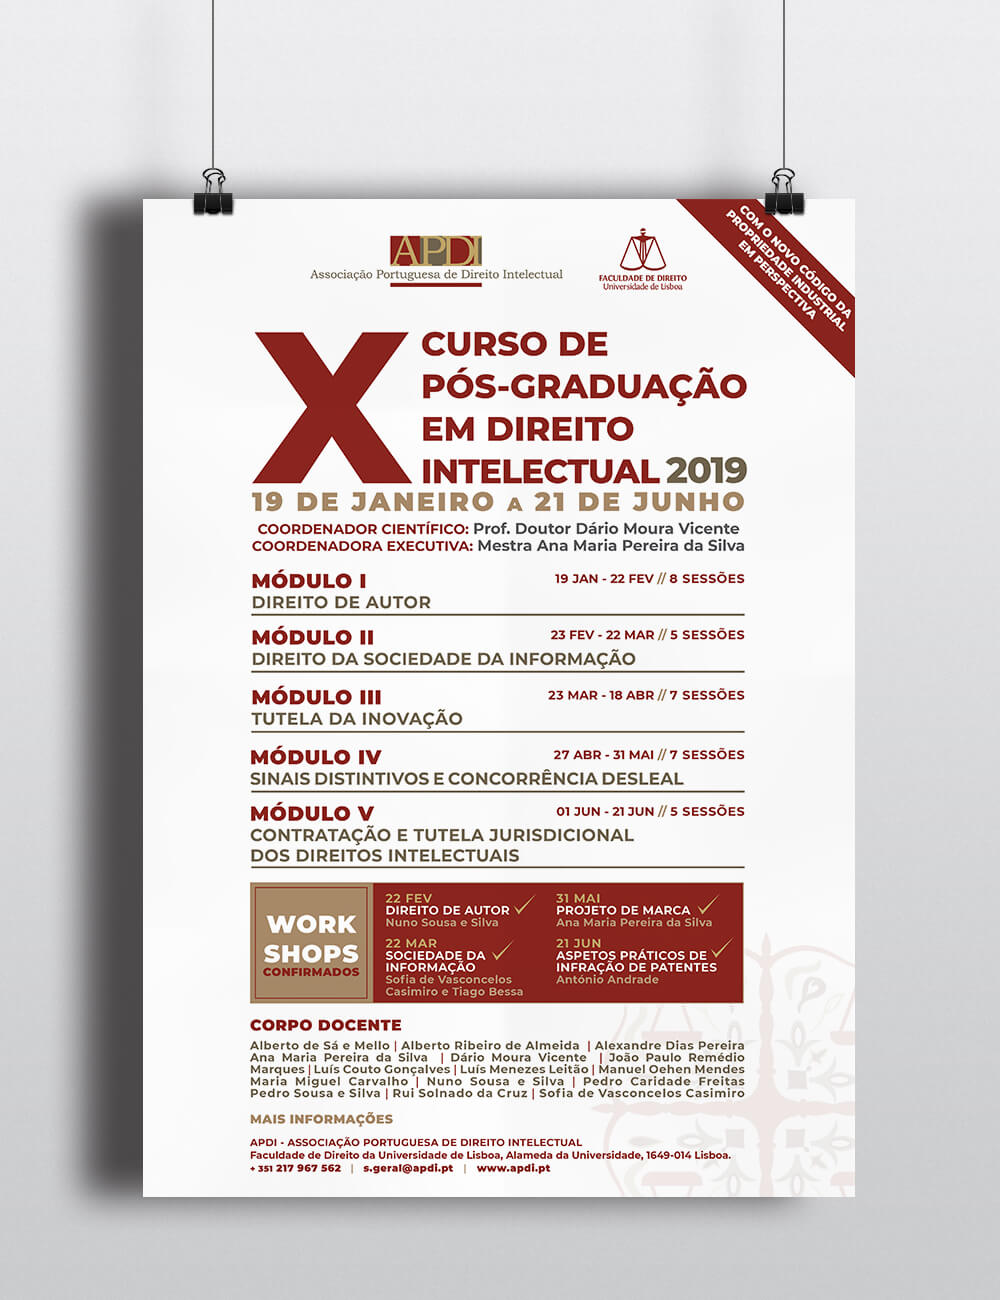 X CURSO DE PÓS-GRADUAÇÃO EM DIREITO INTELECTUAL 2019